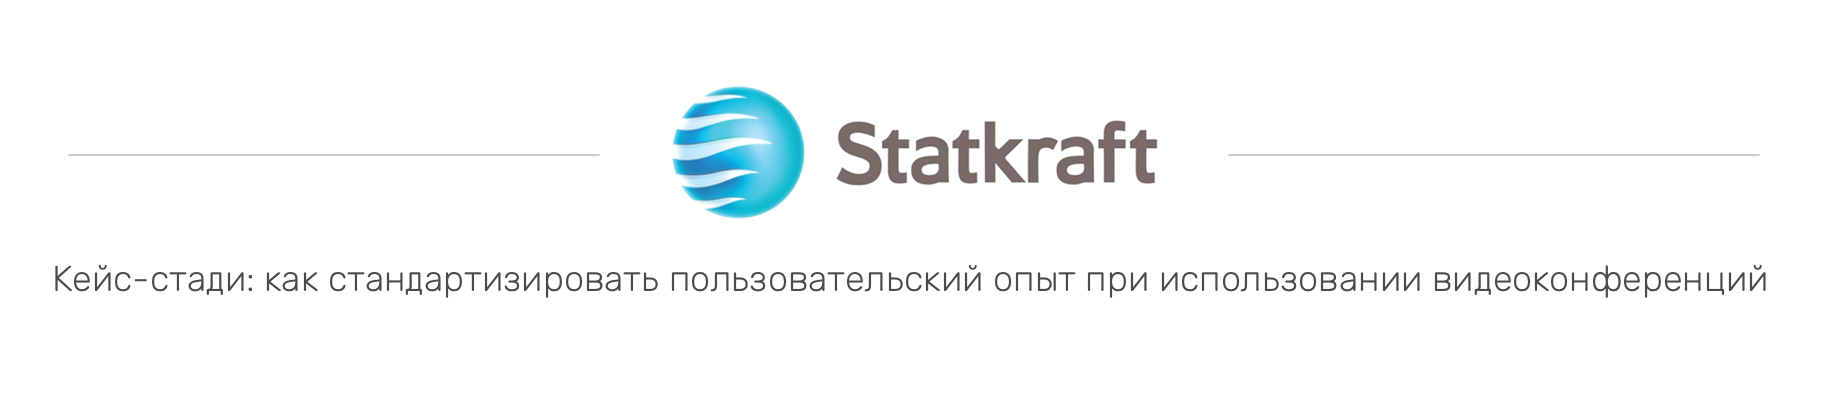 statkraft_cs_header Управление видеоконференциями с Synergy SKY. | Plentystars.com